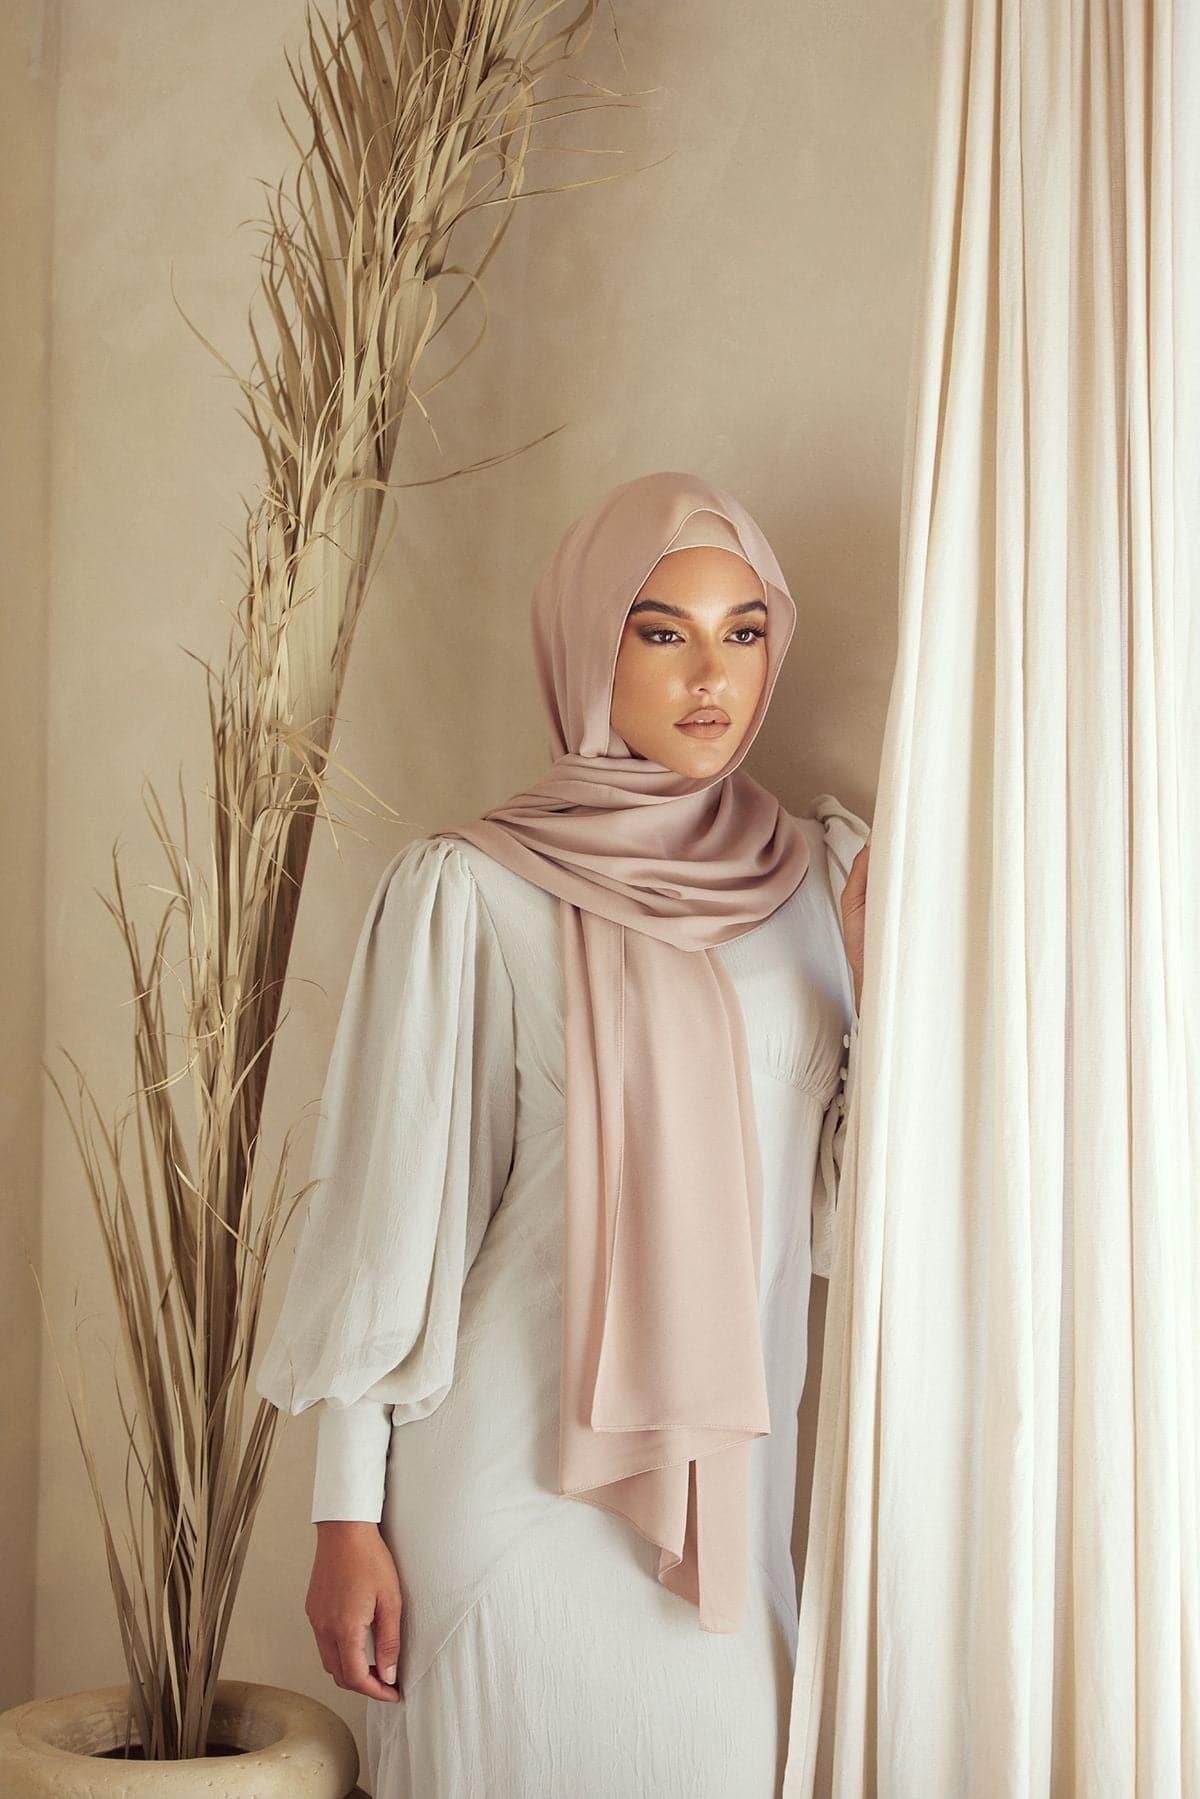 Noor Hijab Undercap- Umber - Zahraa The Label